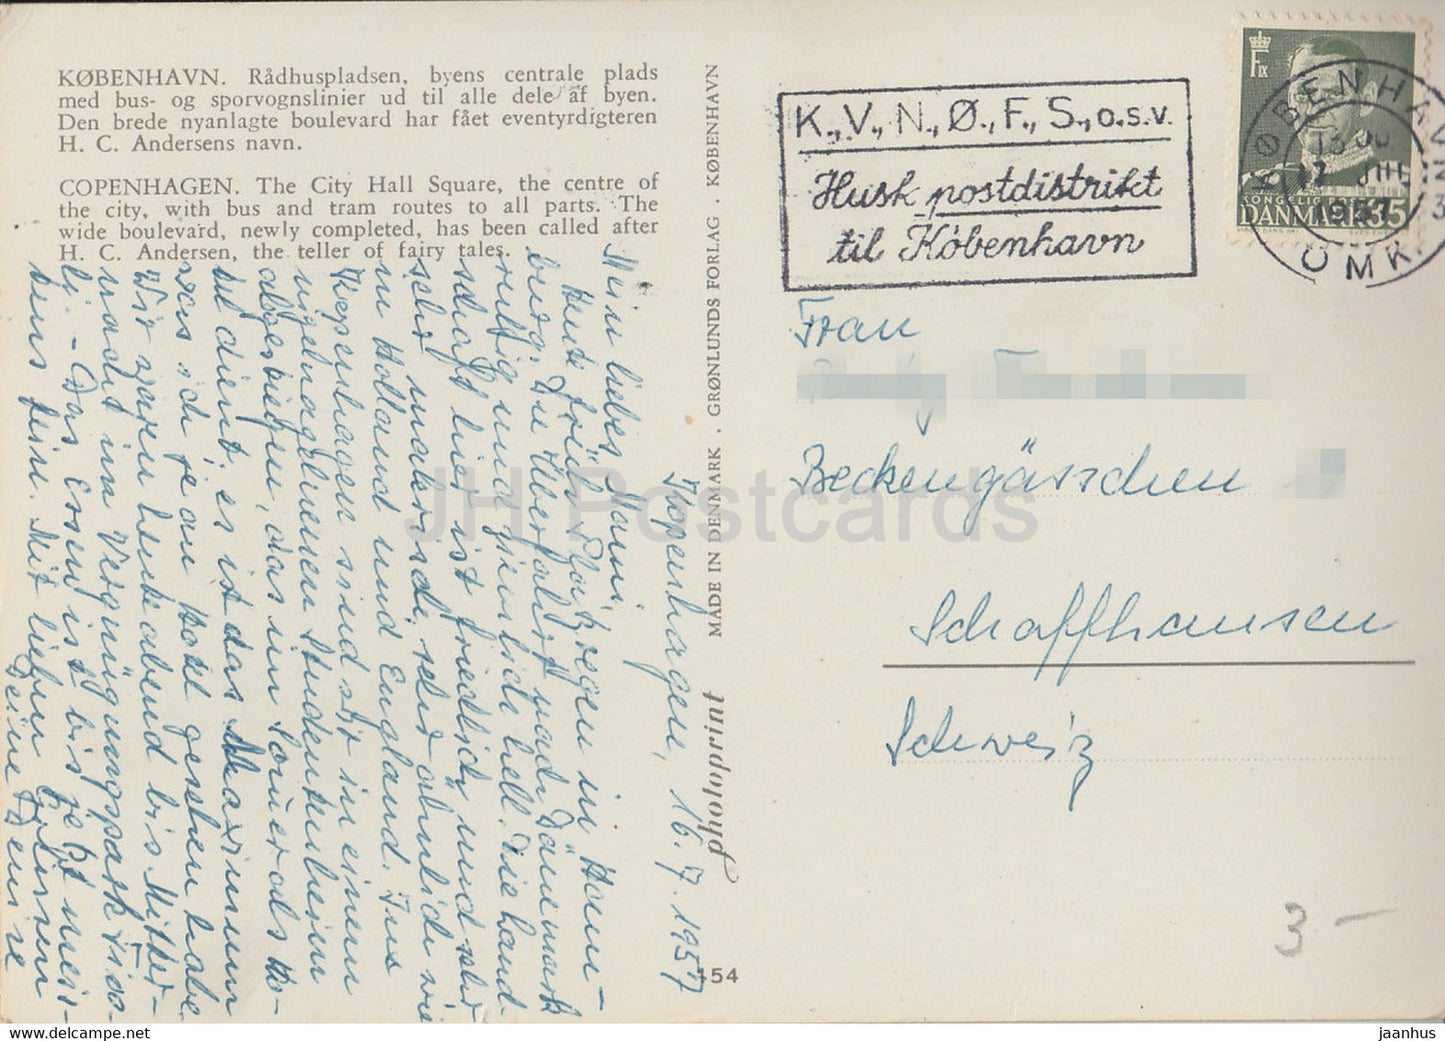 Kopenhagen – Der Rathausplatz – alte Postkarte – 1957 – Dänemark – gebraucht